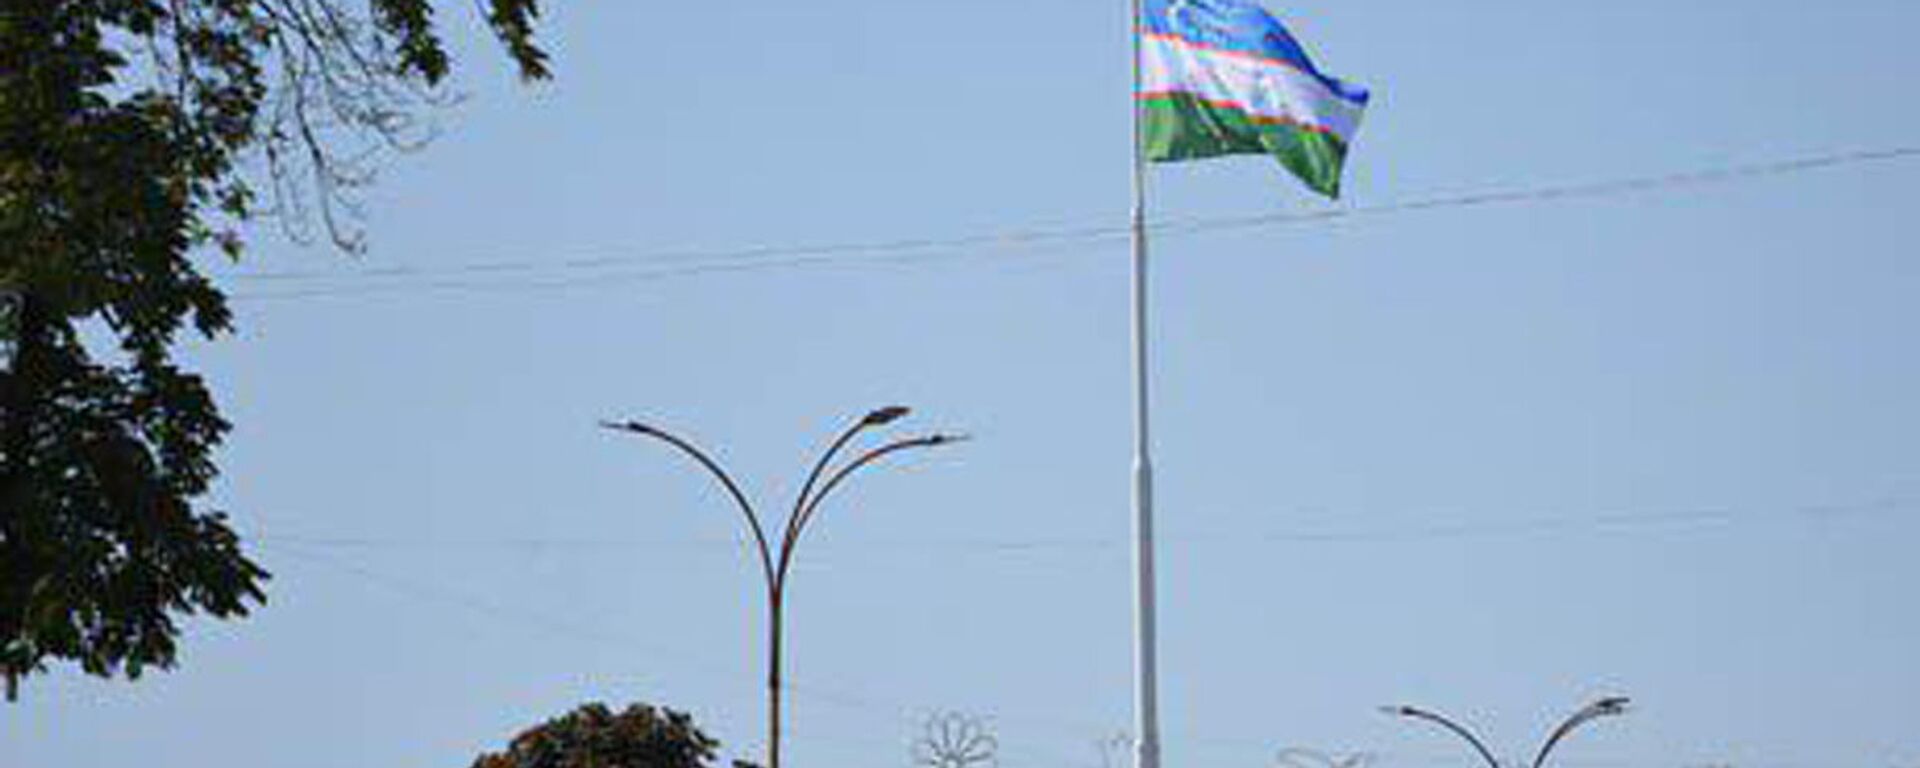 Второй по высоте государственный флаг Узбекистана подняли в Андижане - Sputnik Ўзбекистон, 1920, 30.06.2021